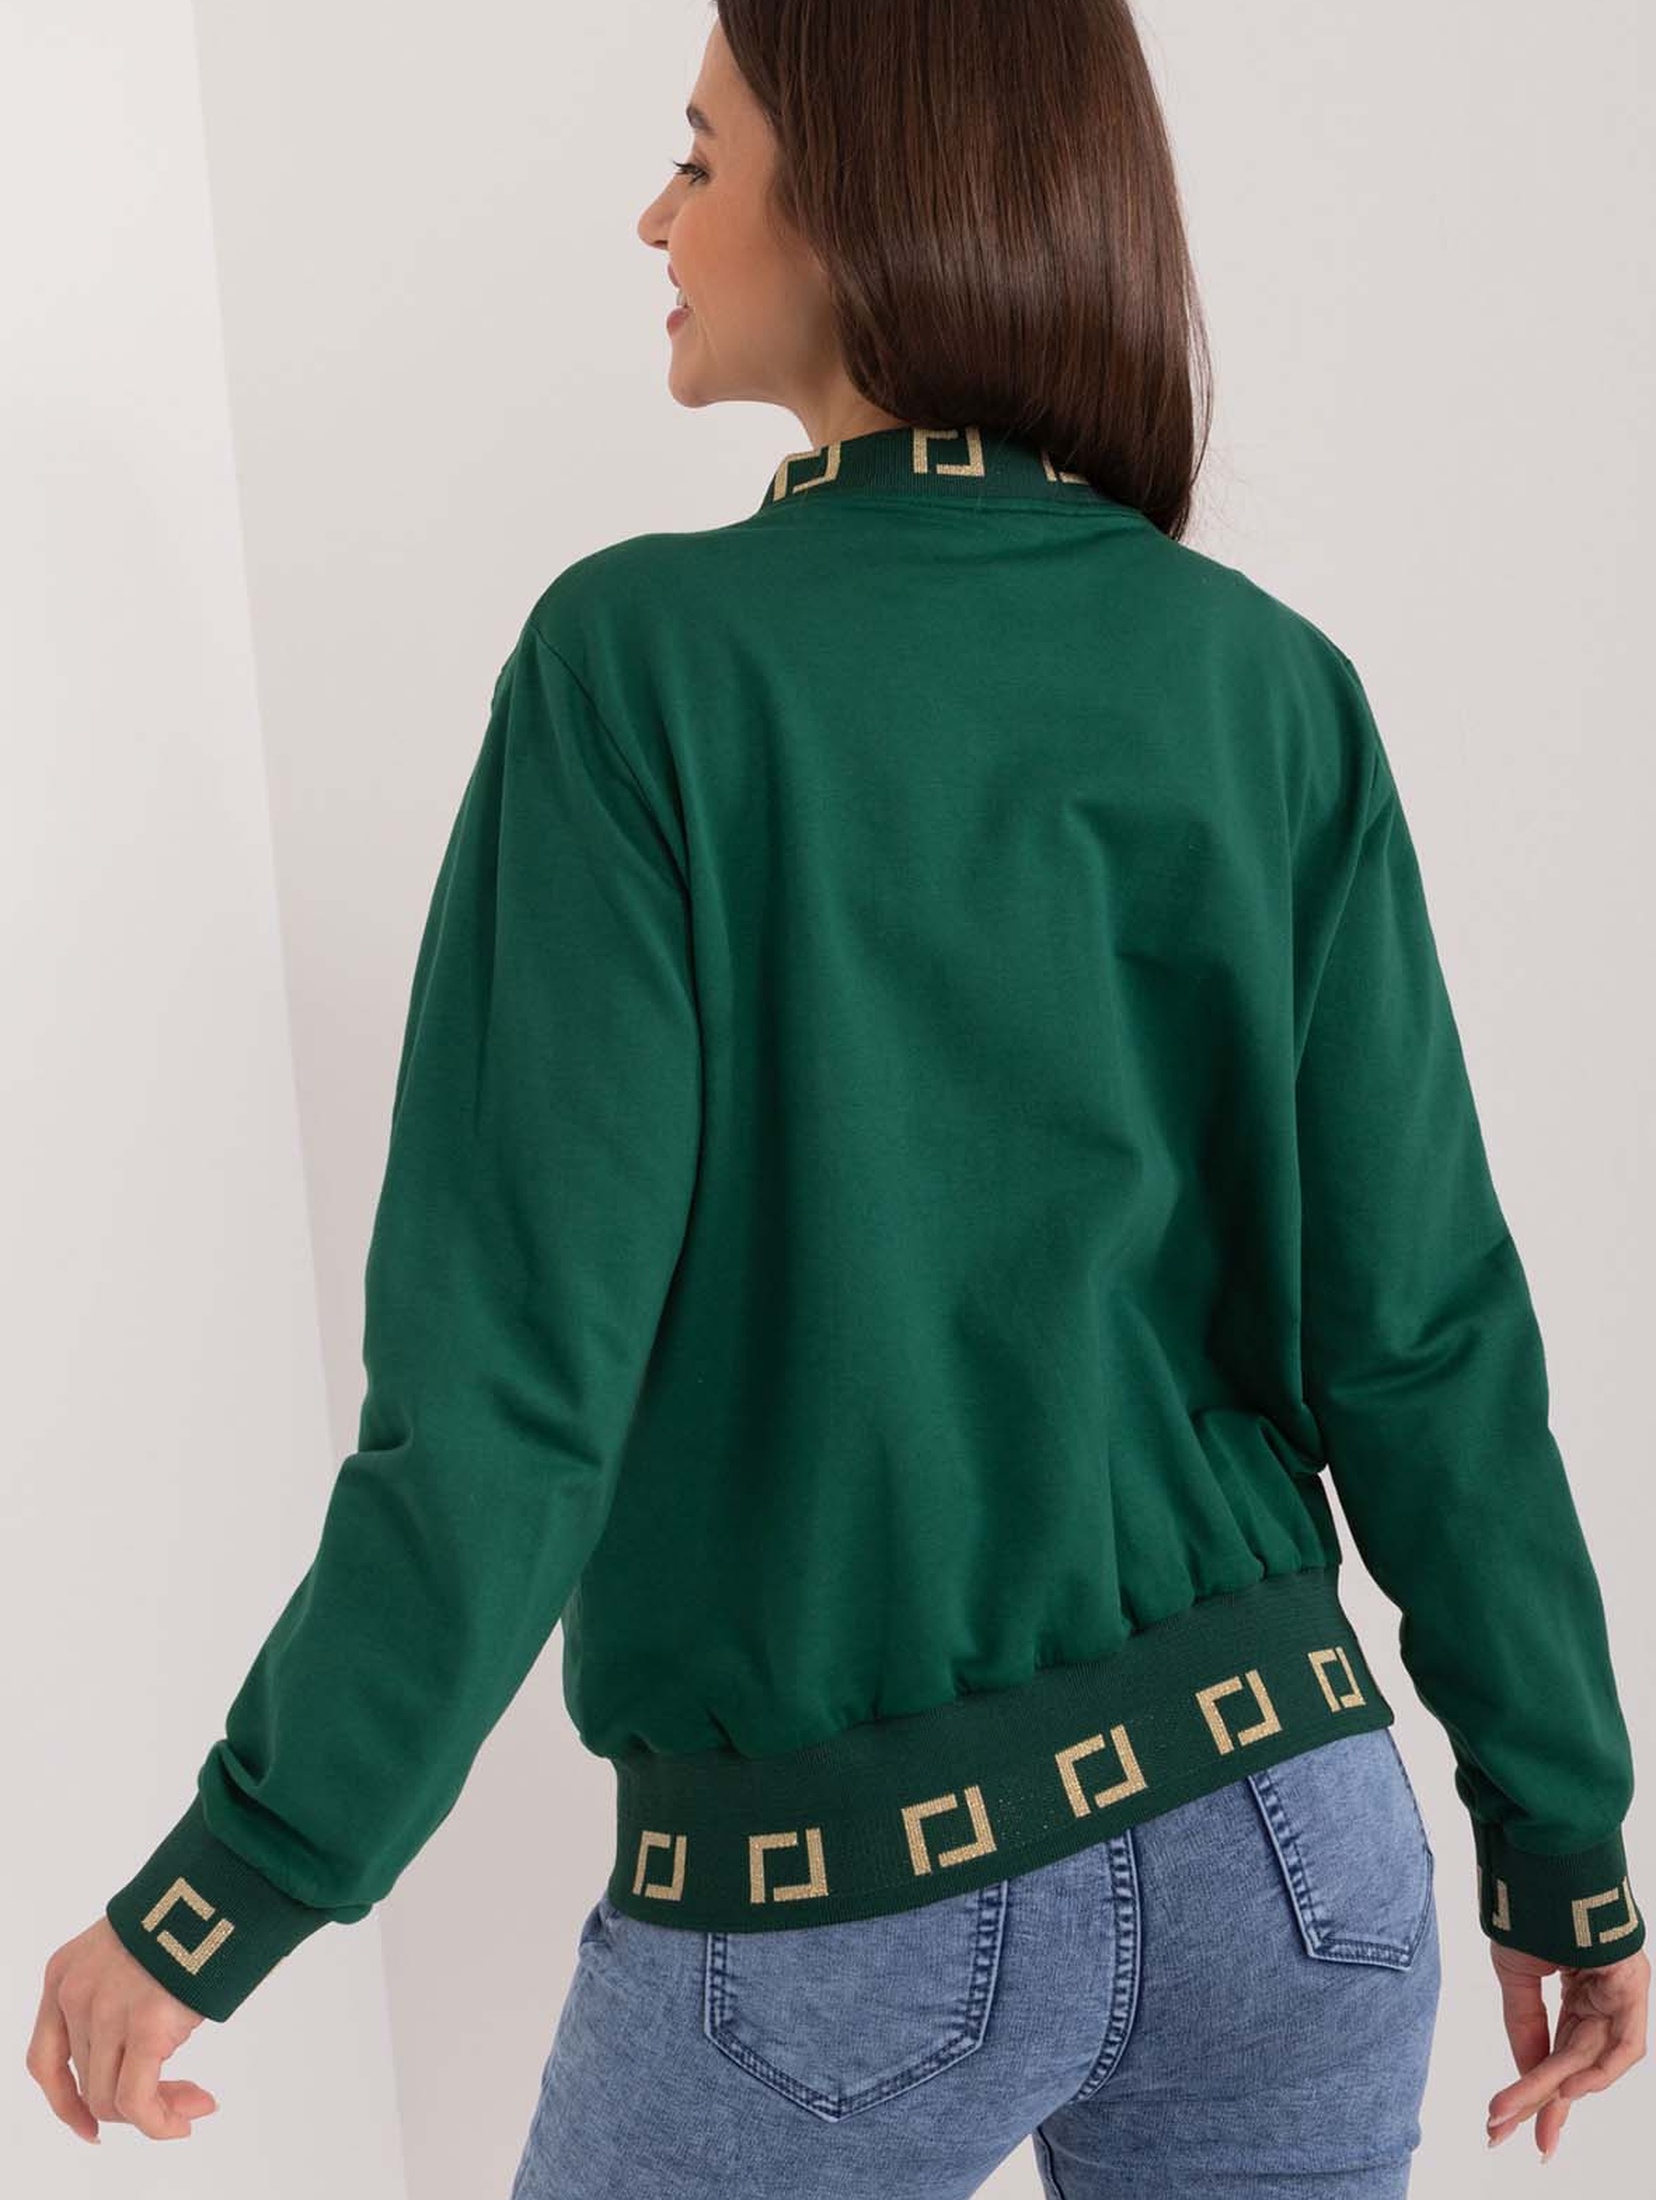 Zielona bluza bomberka damska z ozdobnymi ściągaczami